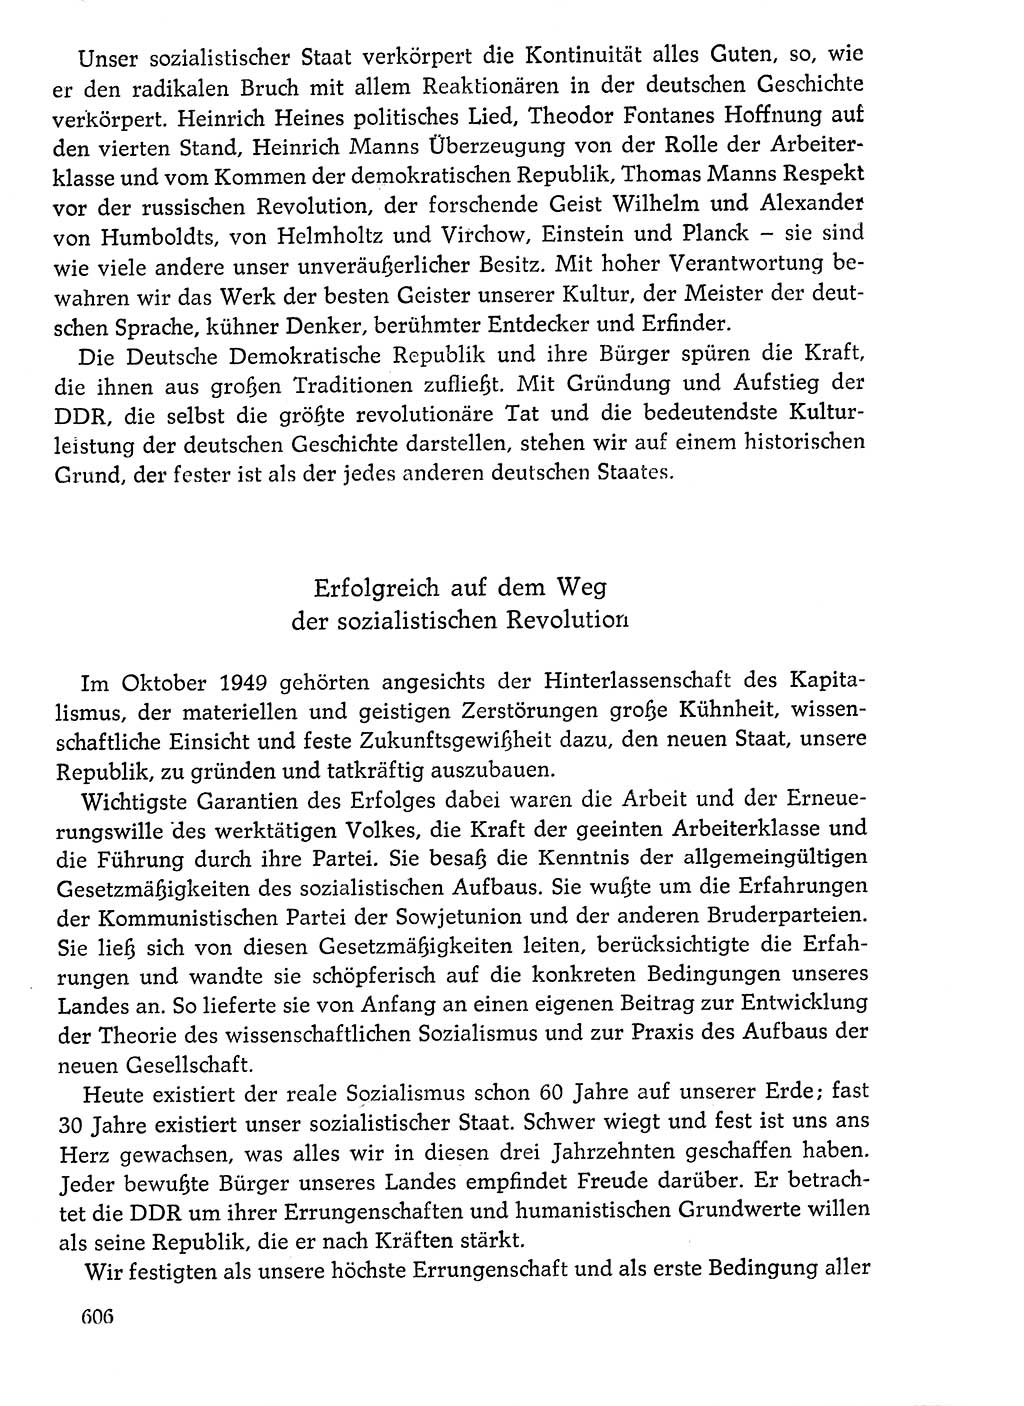 Dokumente der Sozialistischen Einheitspartei Deutschlands (SED) [Deutsche Demokratische Republik (DDR)] 1976-1977, Seite 606 (Dok. SED DDR 1976-1977, S. 606)